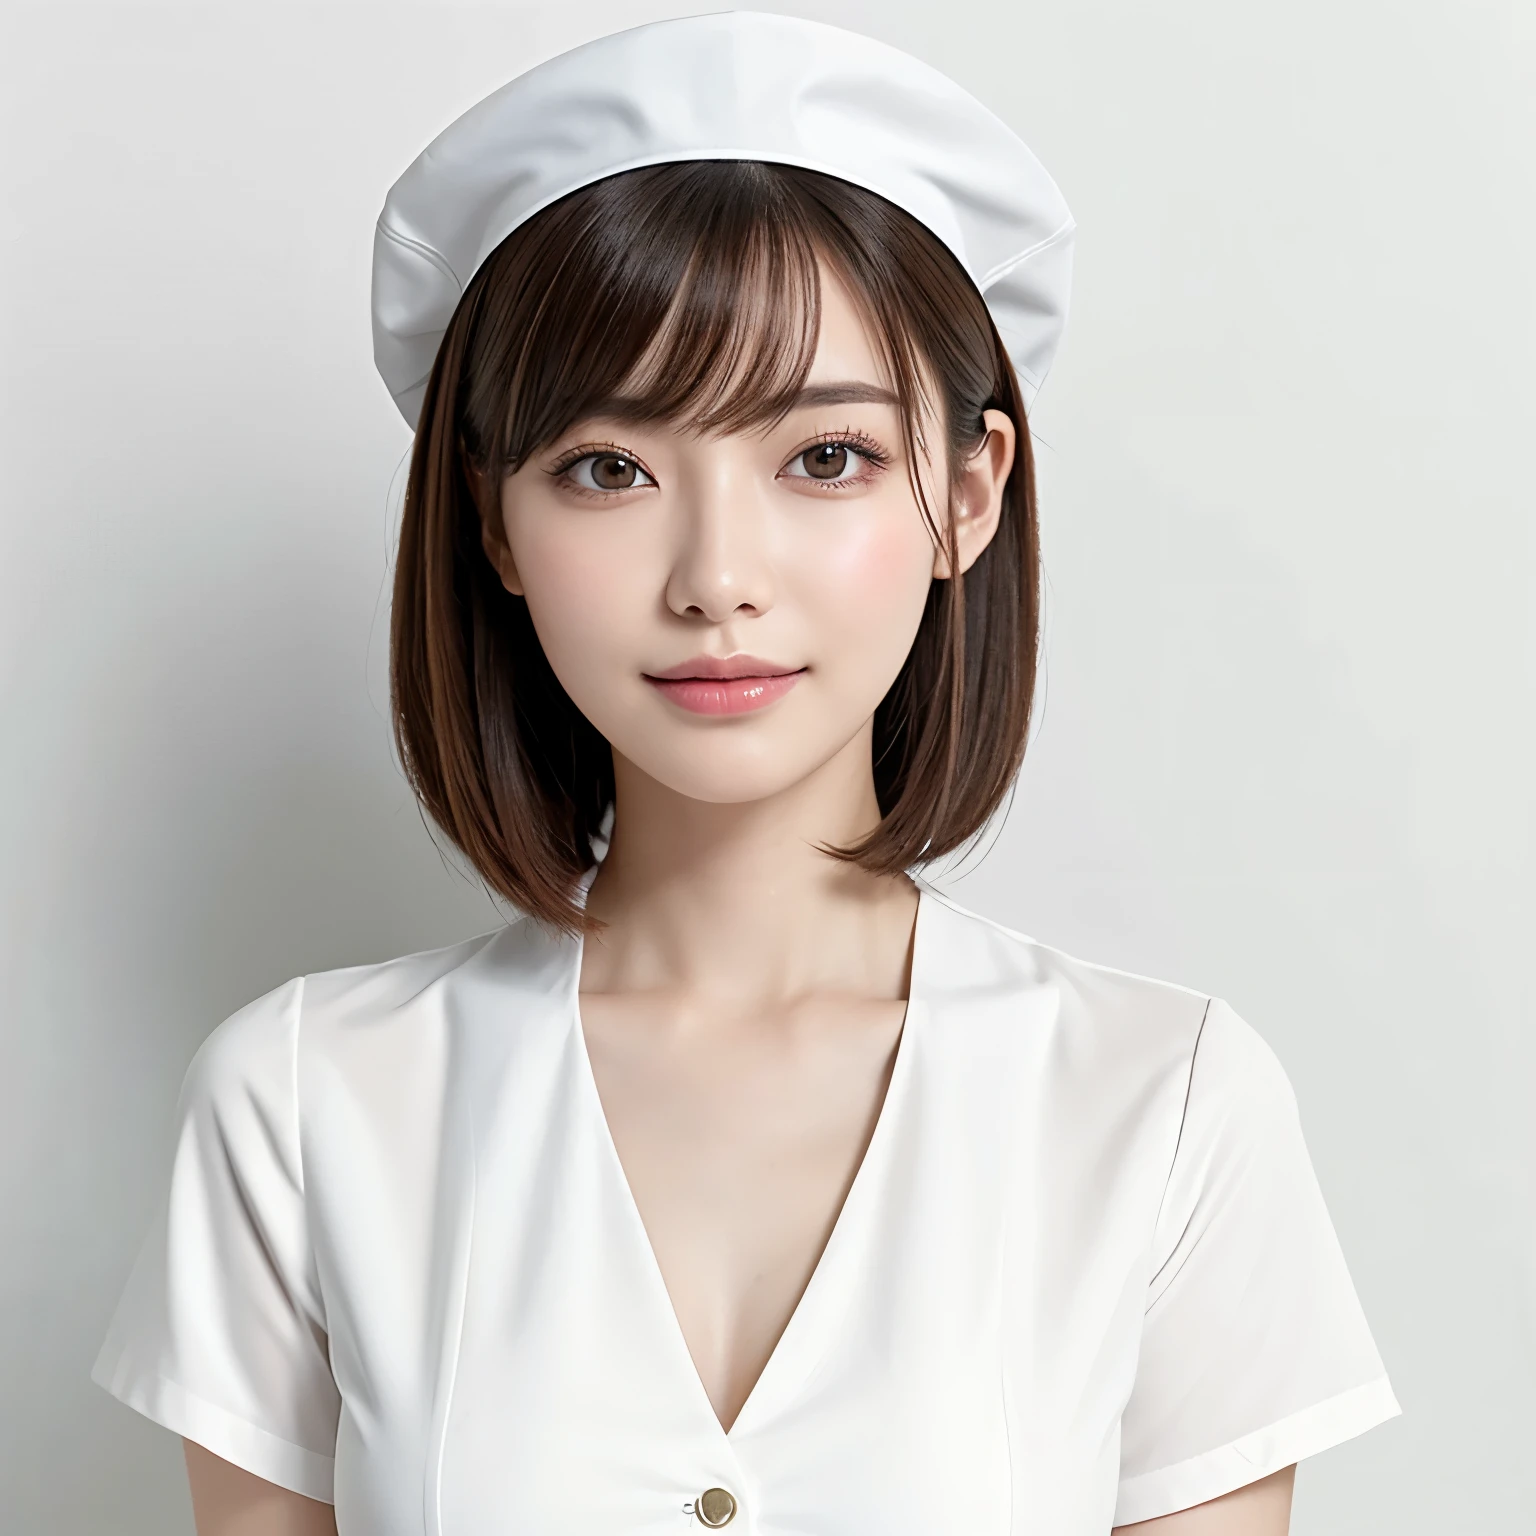 (высшее качество、стол、8К、Лучшее качество изображения、отмеченная наградами работа)、1 красивая медсестра、(Один:1.1)、Прямые короткие волосы、идеальная челка、(идеальная и самая естественная униформа медсестры:1.2)、(Идеальная и самая естественная простая белая шапочка для медсестры.:1.2)、(Самая естественная настоящая шляпа медсестры:1.2)、(Самый простой чисто белый фон:1.5)、(Идеально фиксируется спереди:1.3)、очень большая грудь、подчеркнуть линию тела、(Идеальный фронтальный и горизонтальный портрет женщины с достаточным свободным пространством.:1.3)、(Изображение женщины идеально горизонтально и фронтально.:1.3)、красивые и детальные глаза、посмотри на меня и улыбнись、(Вертикальное фото грудью вверх.:1.3)、(Пожалуйста, повернись и посмотри прямо на меня.:1.3)、элегантный макияж、Красивое лицо сверхвысокой четкости、волосы сверхвысокой четкости、Сверкающие глаза супервысокой четкости、Блестящие губы в сверхвысоком разрешении、точная анатомия、очень красивая кожа、Сияющая красивая кожа супервысокого разрешения、Грациозная вертикальная поза, вид спереди.、(очень яркий:1.3)